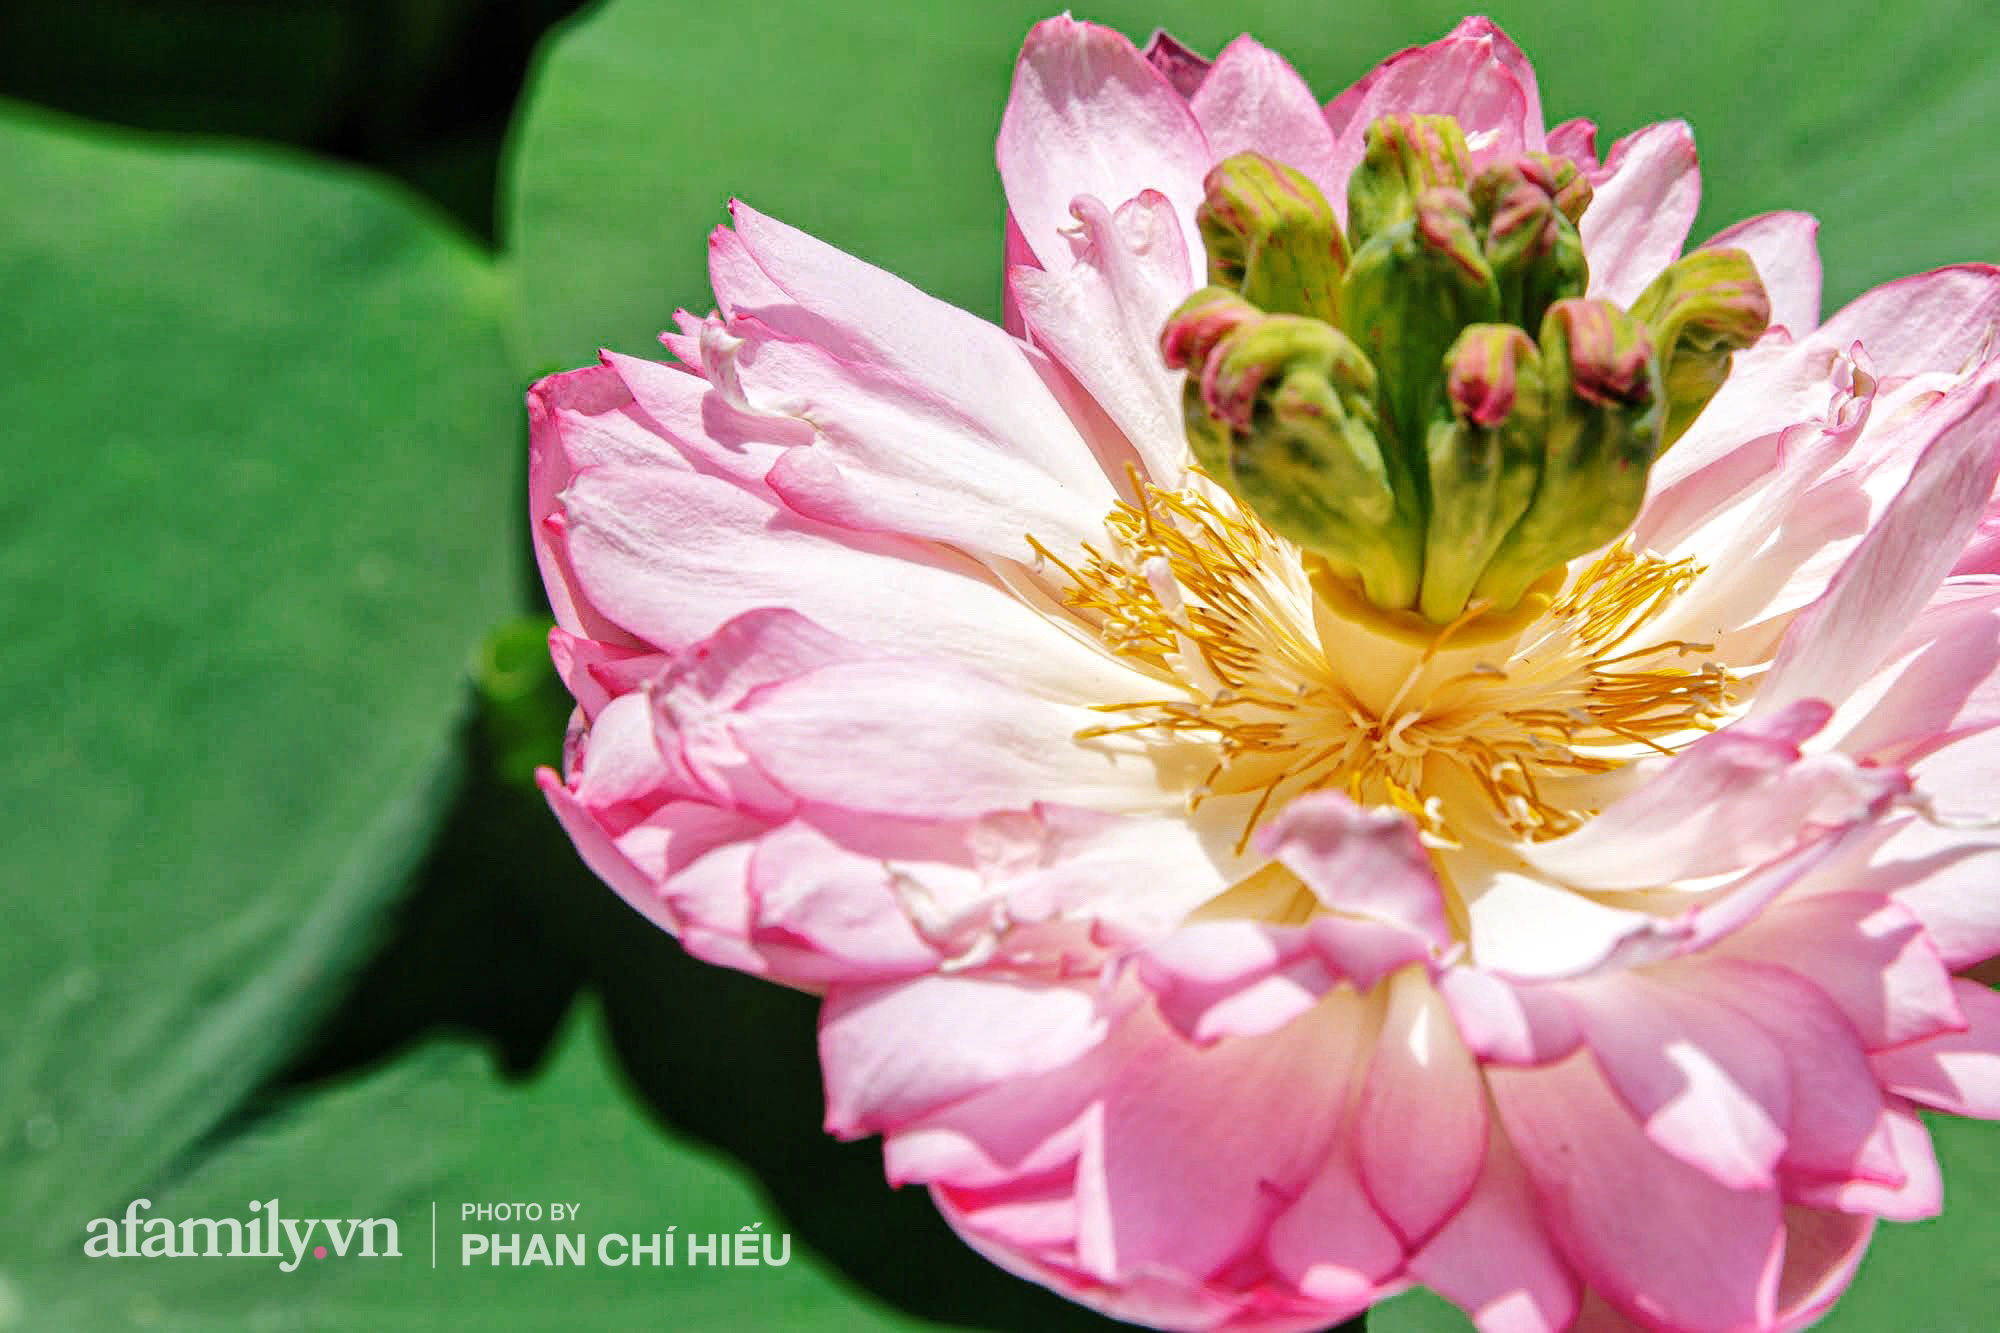 Độc đáo với thú chơi sen cung đình Huế tại Hà Nội, nở hoa tuyệt đẹp giữa ngôi nhà cổ trăm năm tuổi khiến bao người mê mẩn - Ảnh 6.